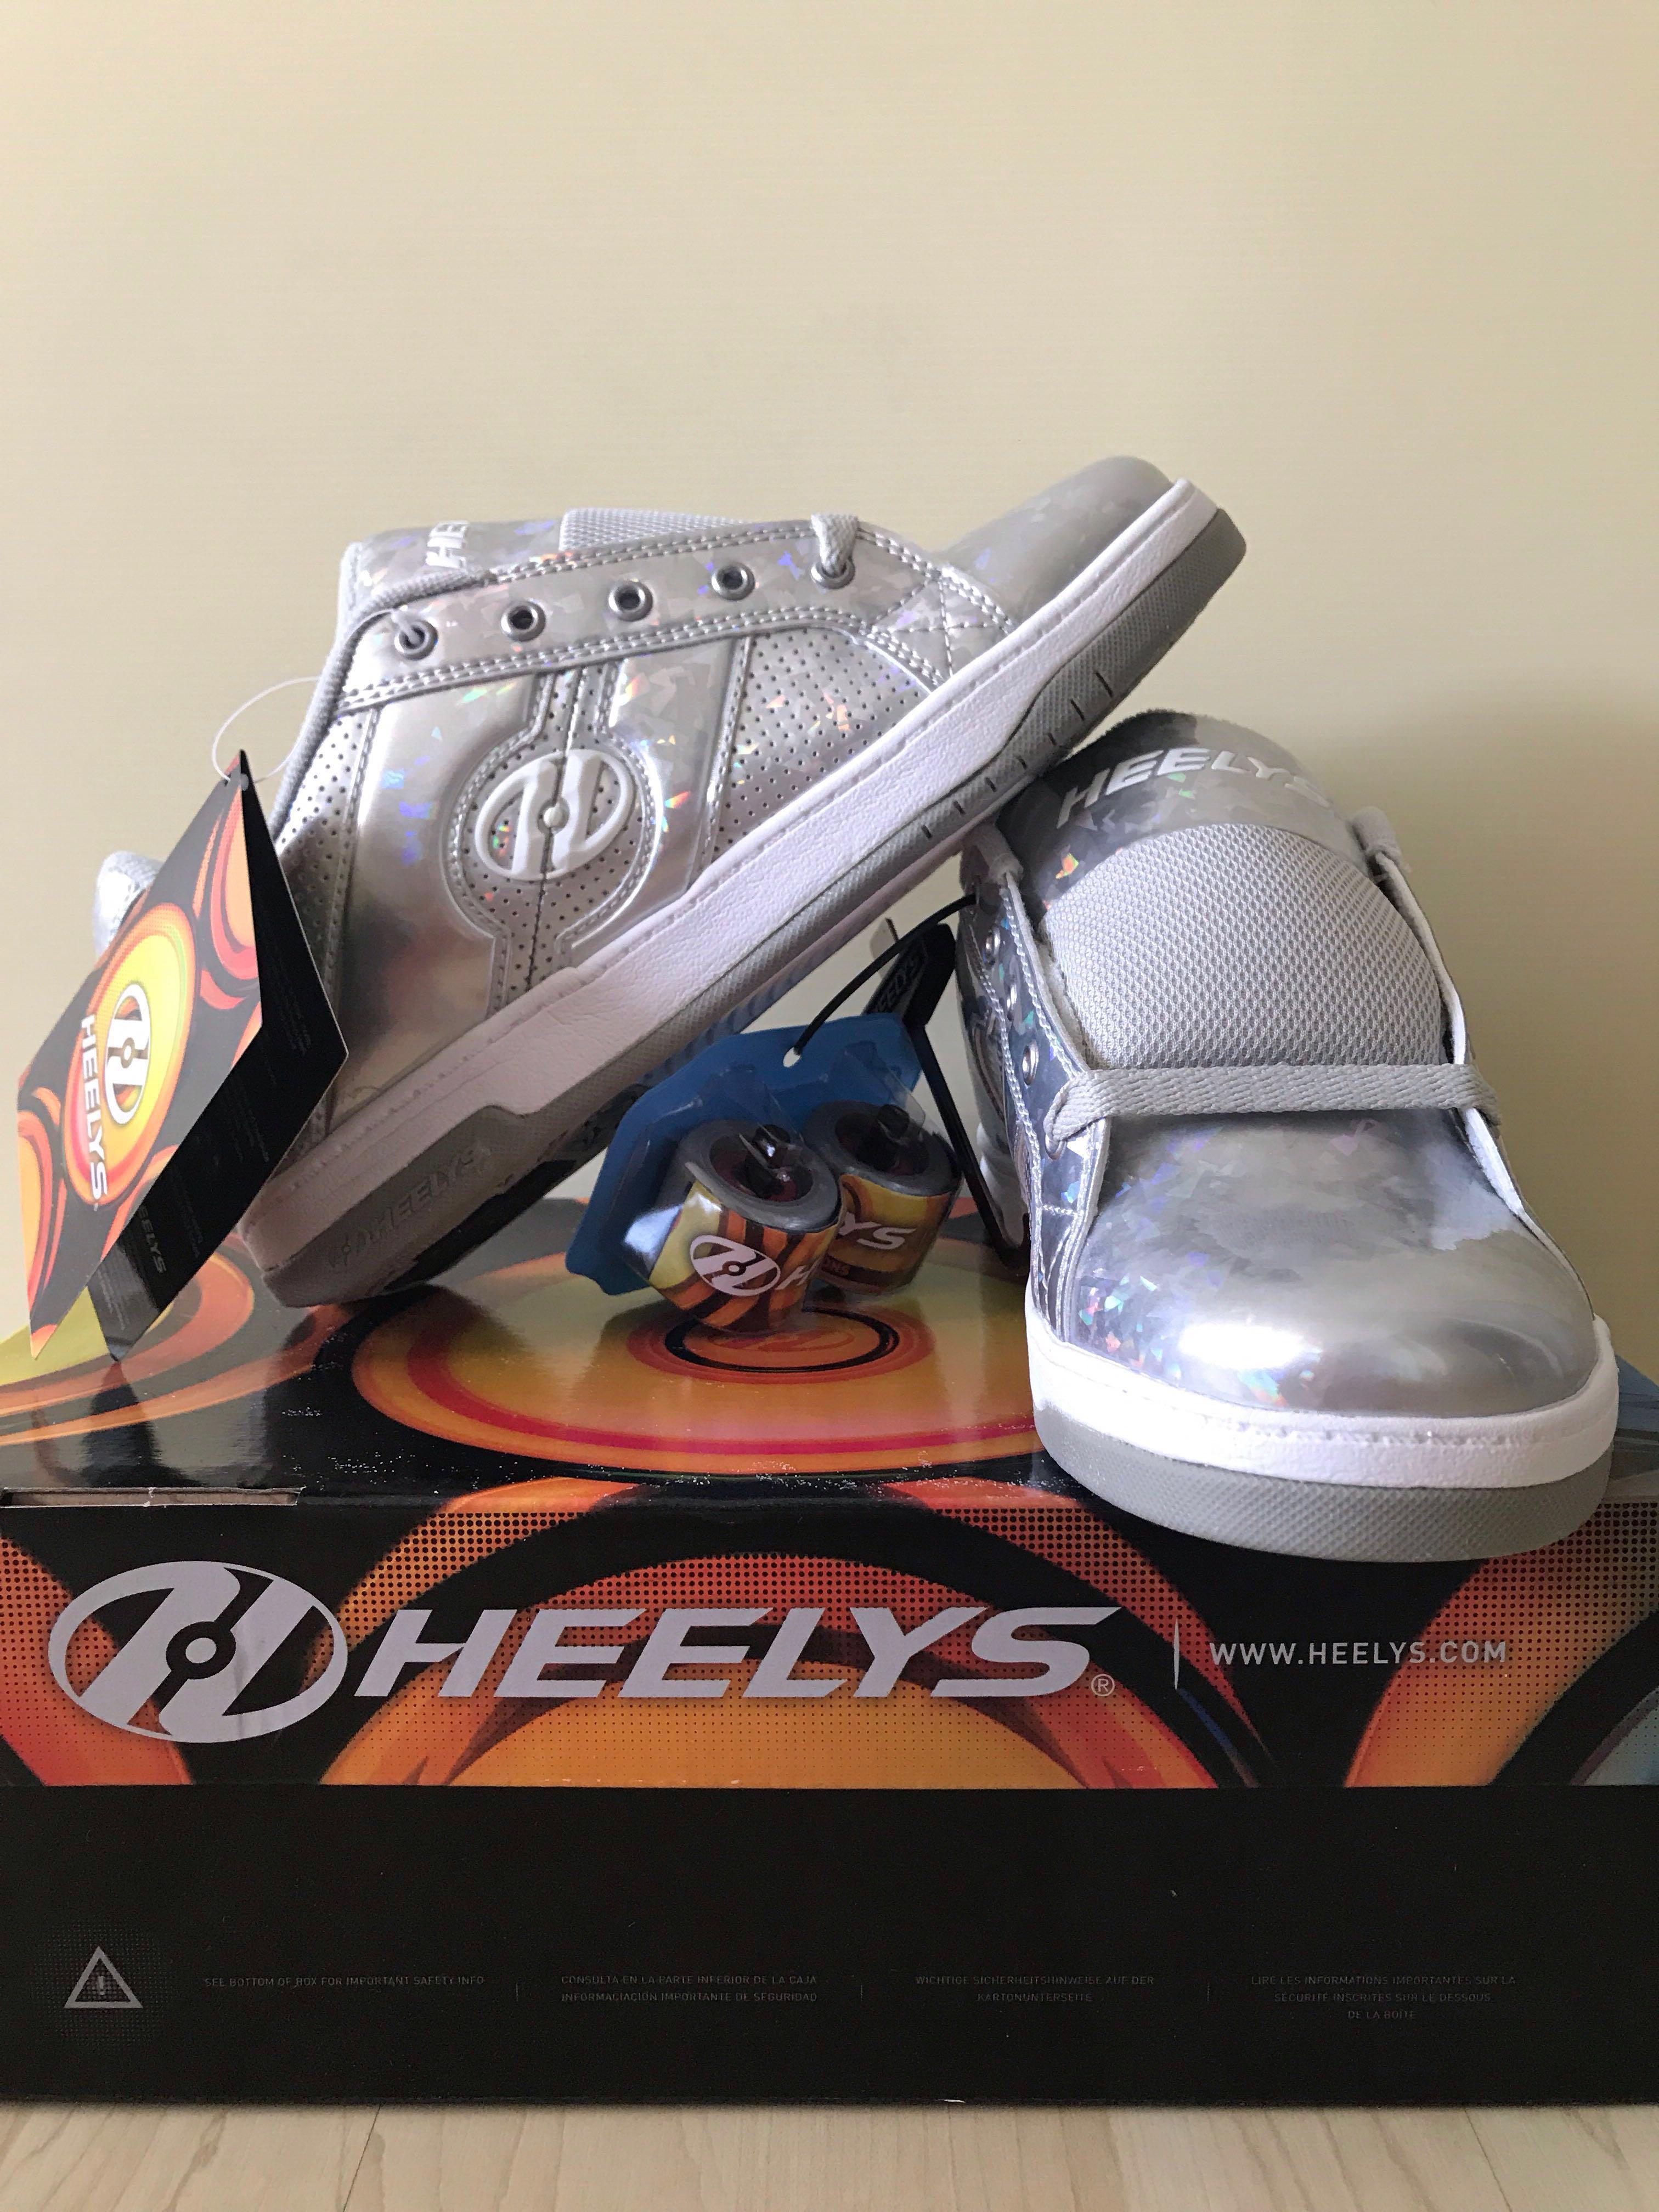 heelys size 8